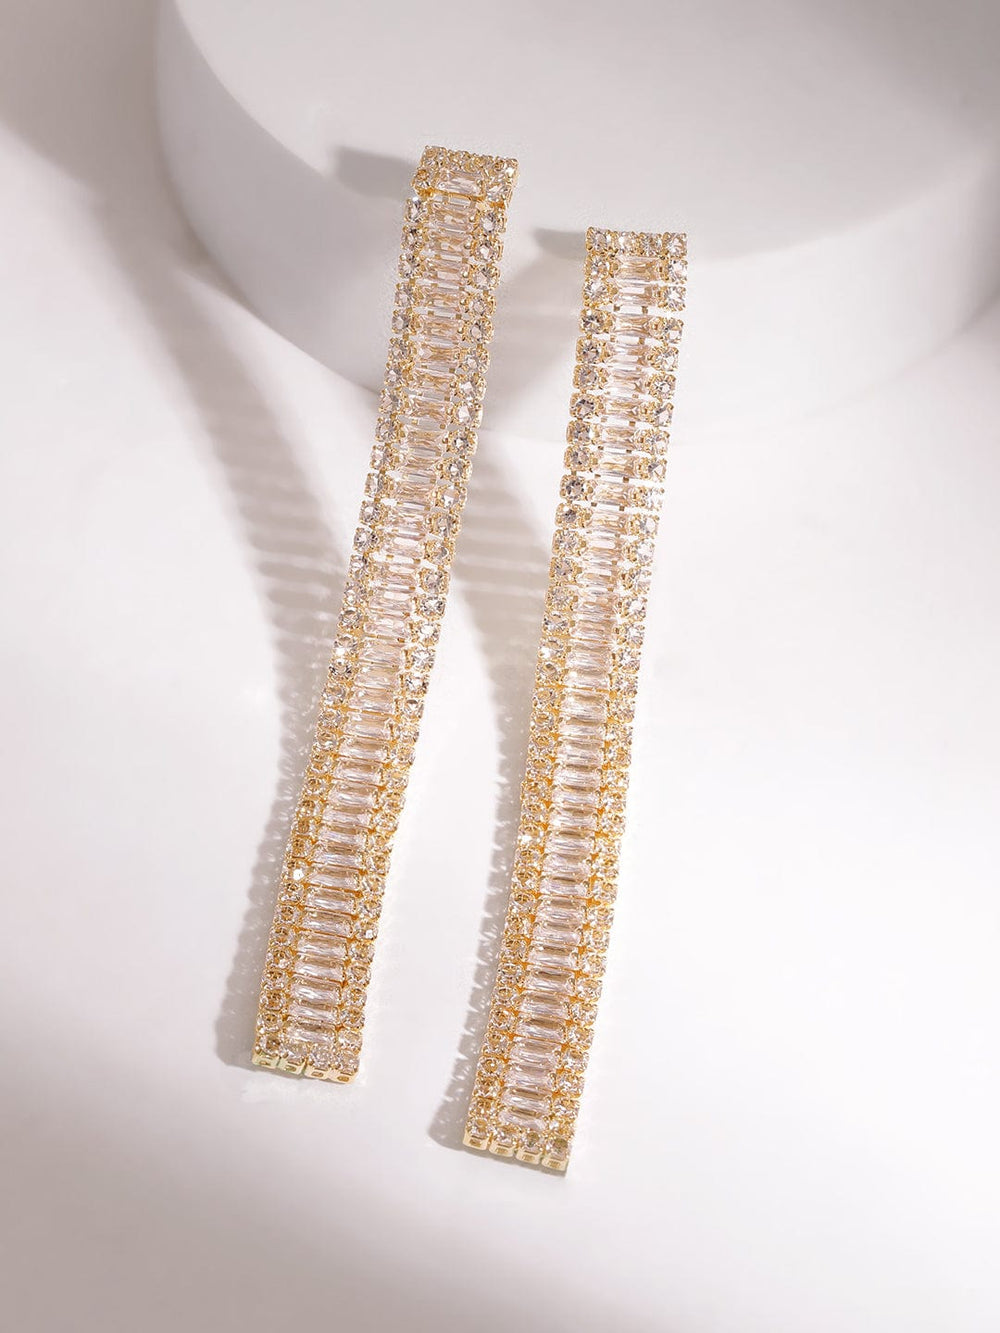 Rubans Women's Gold Plated Crystal Zirconia Stone Studded Drop Earrings Earrings